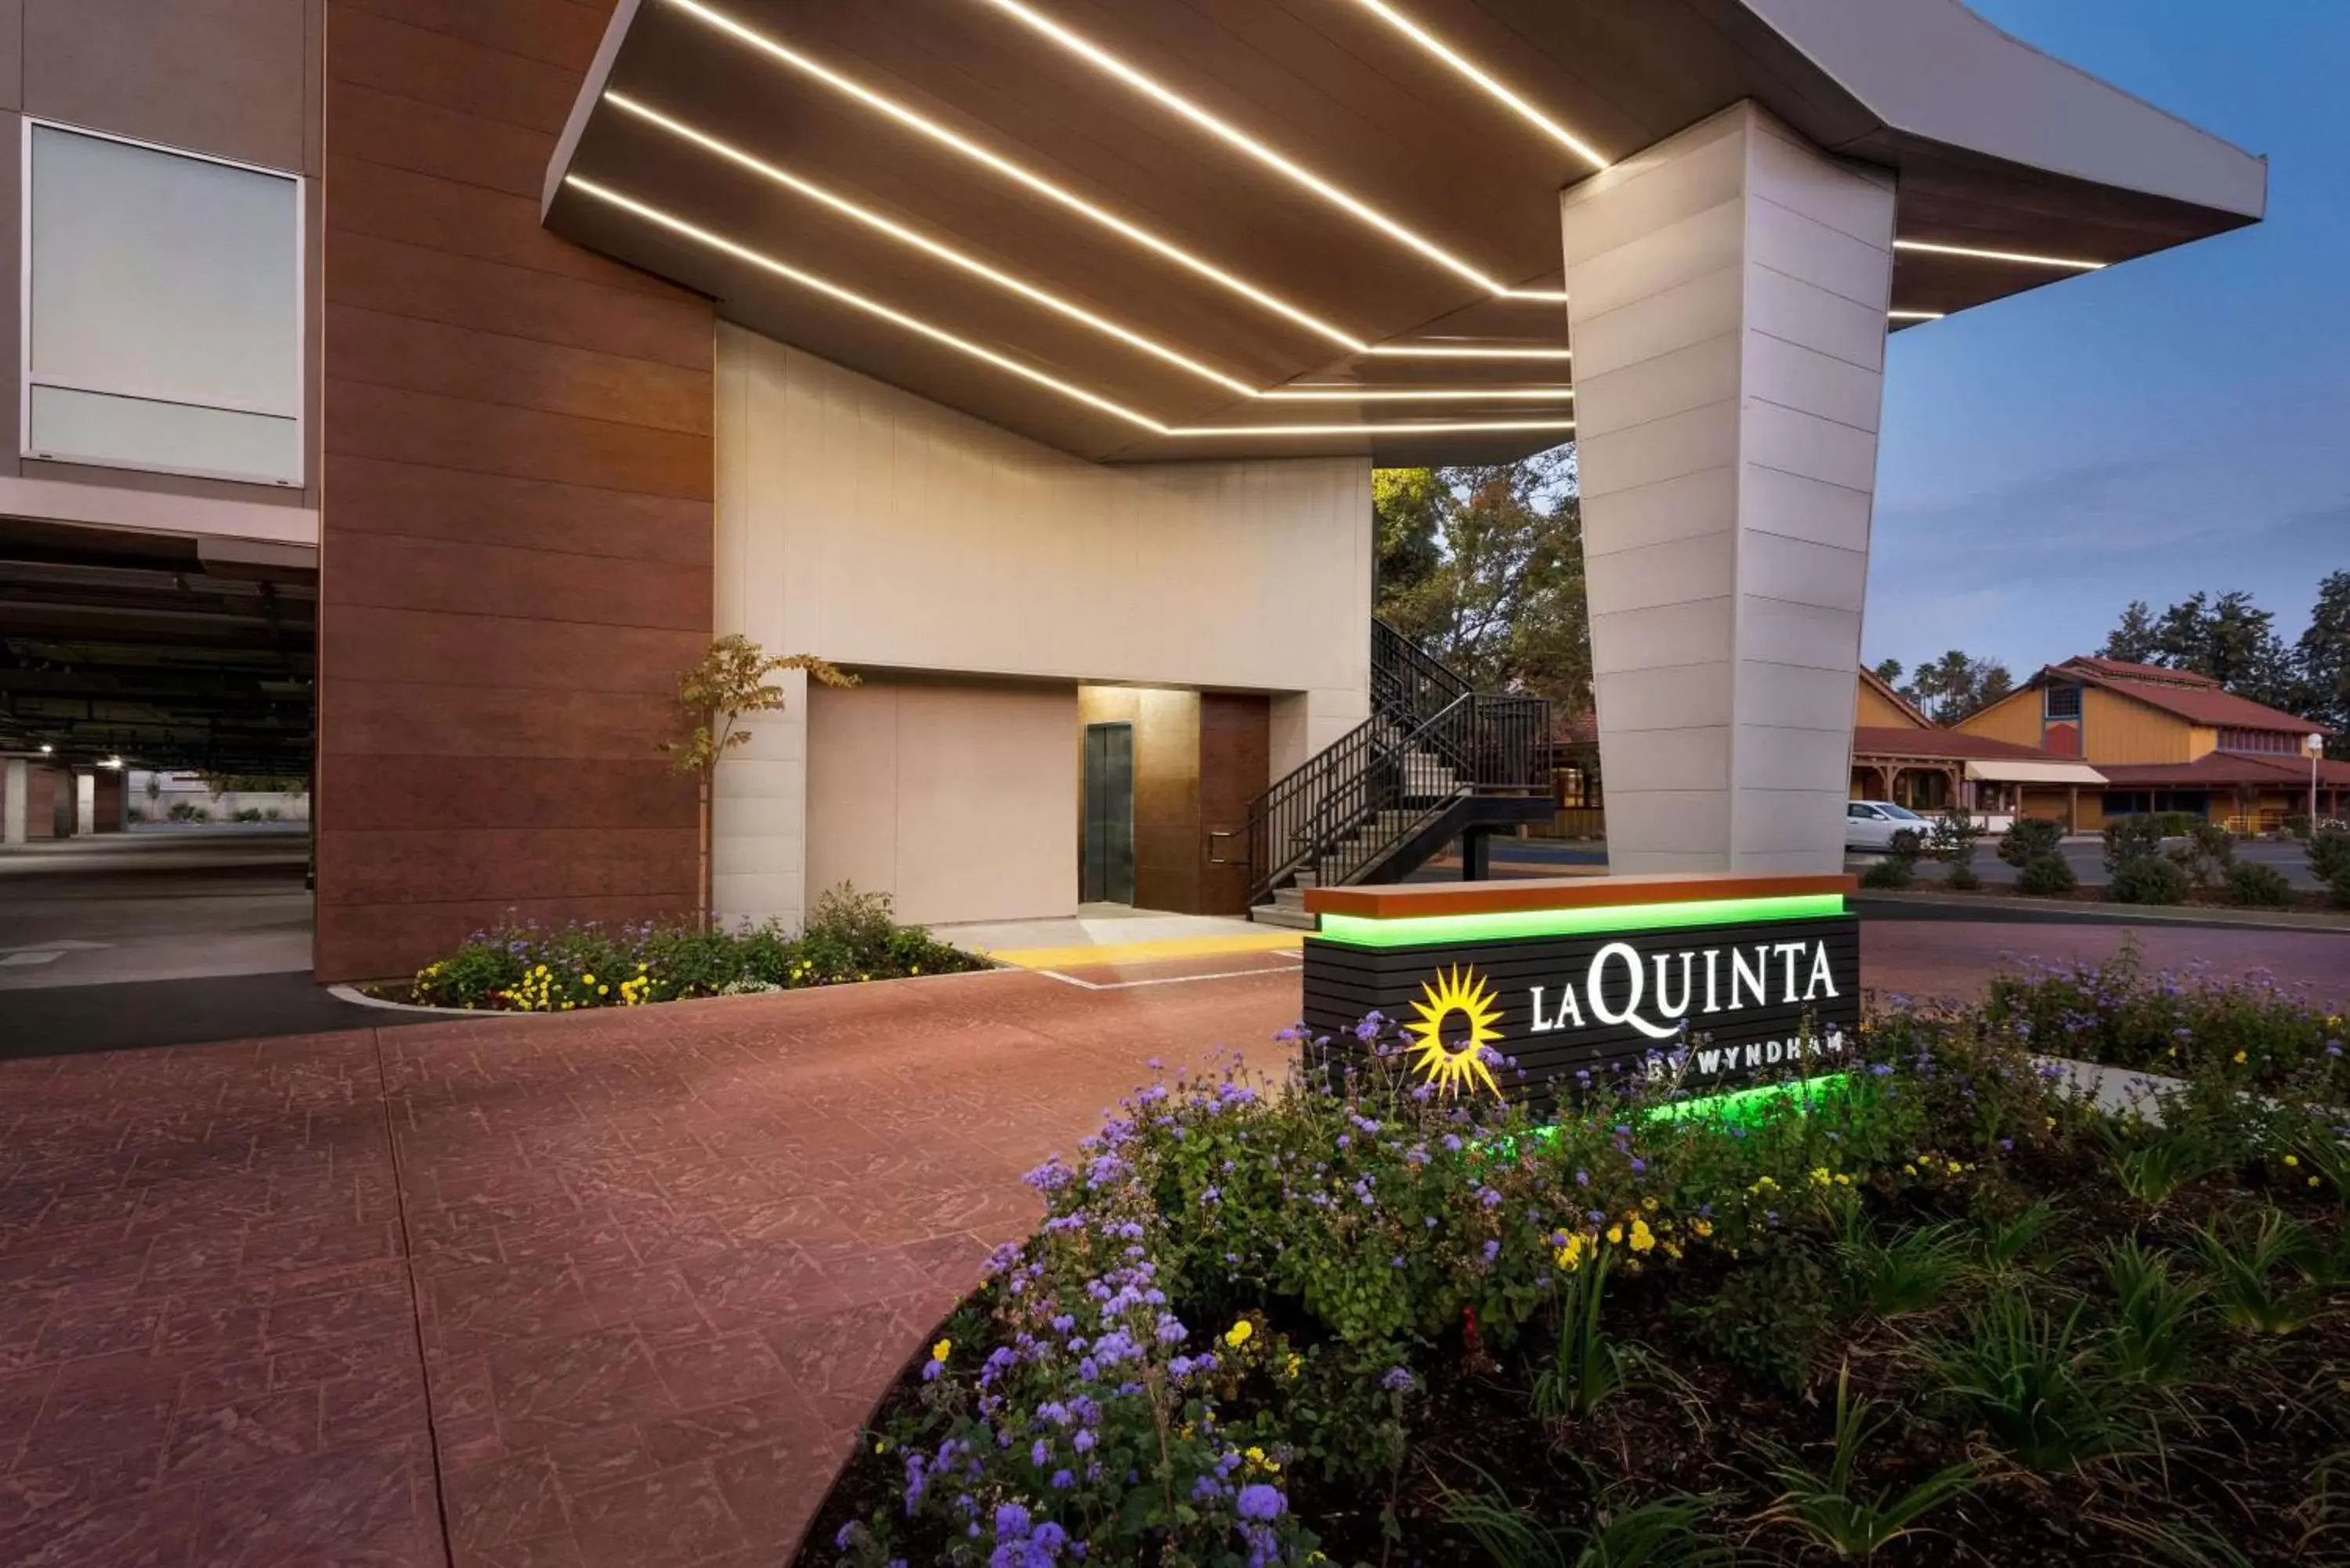 Property building in La Quinta by Wyndham Clovis CA